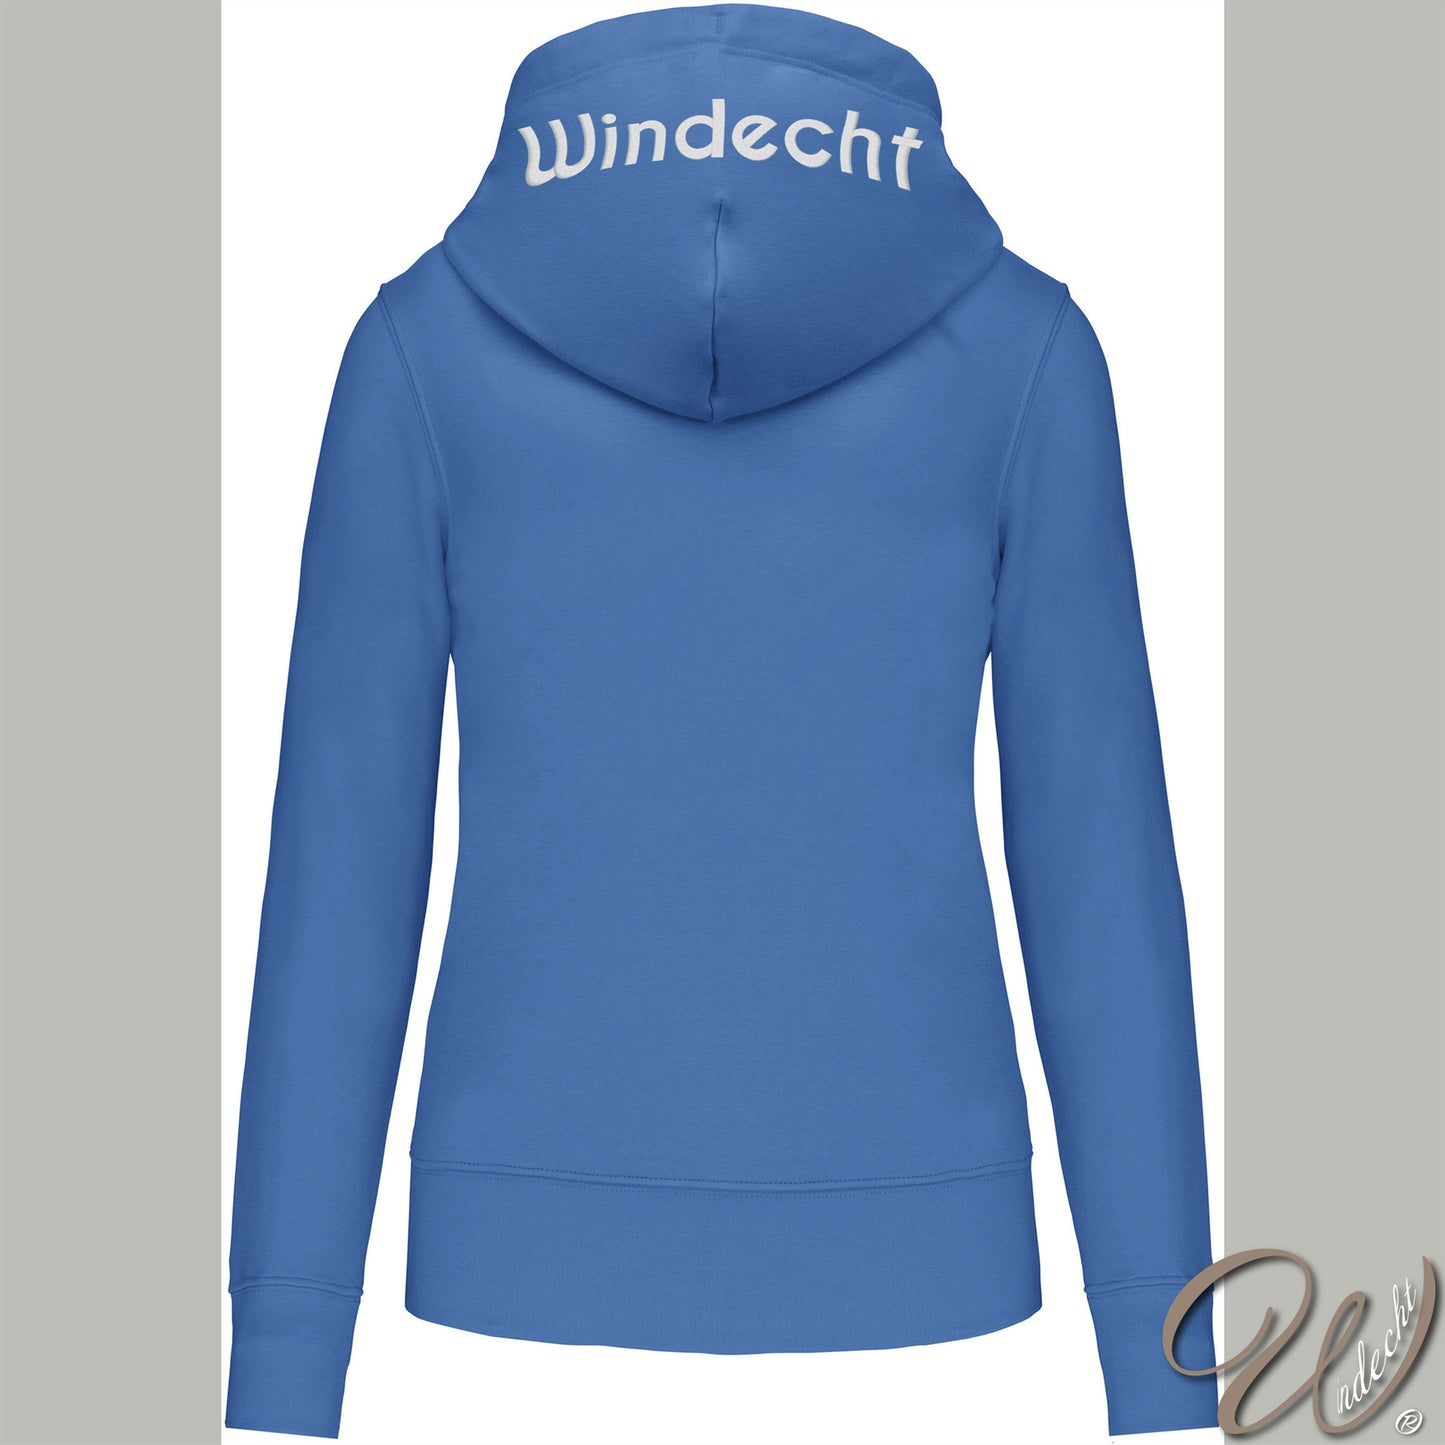 Unisex Hoodie - "Windecht" (Gr. S-5XL)